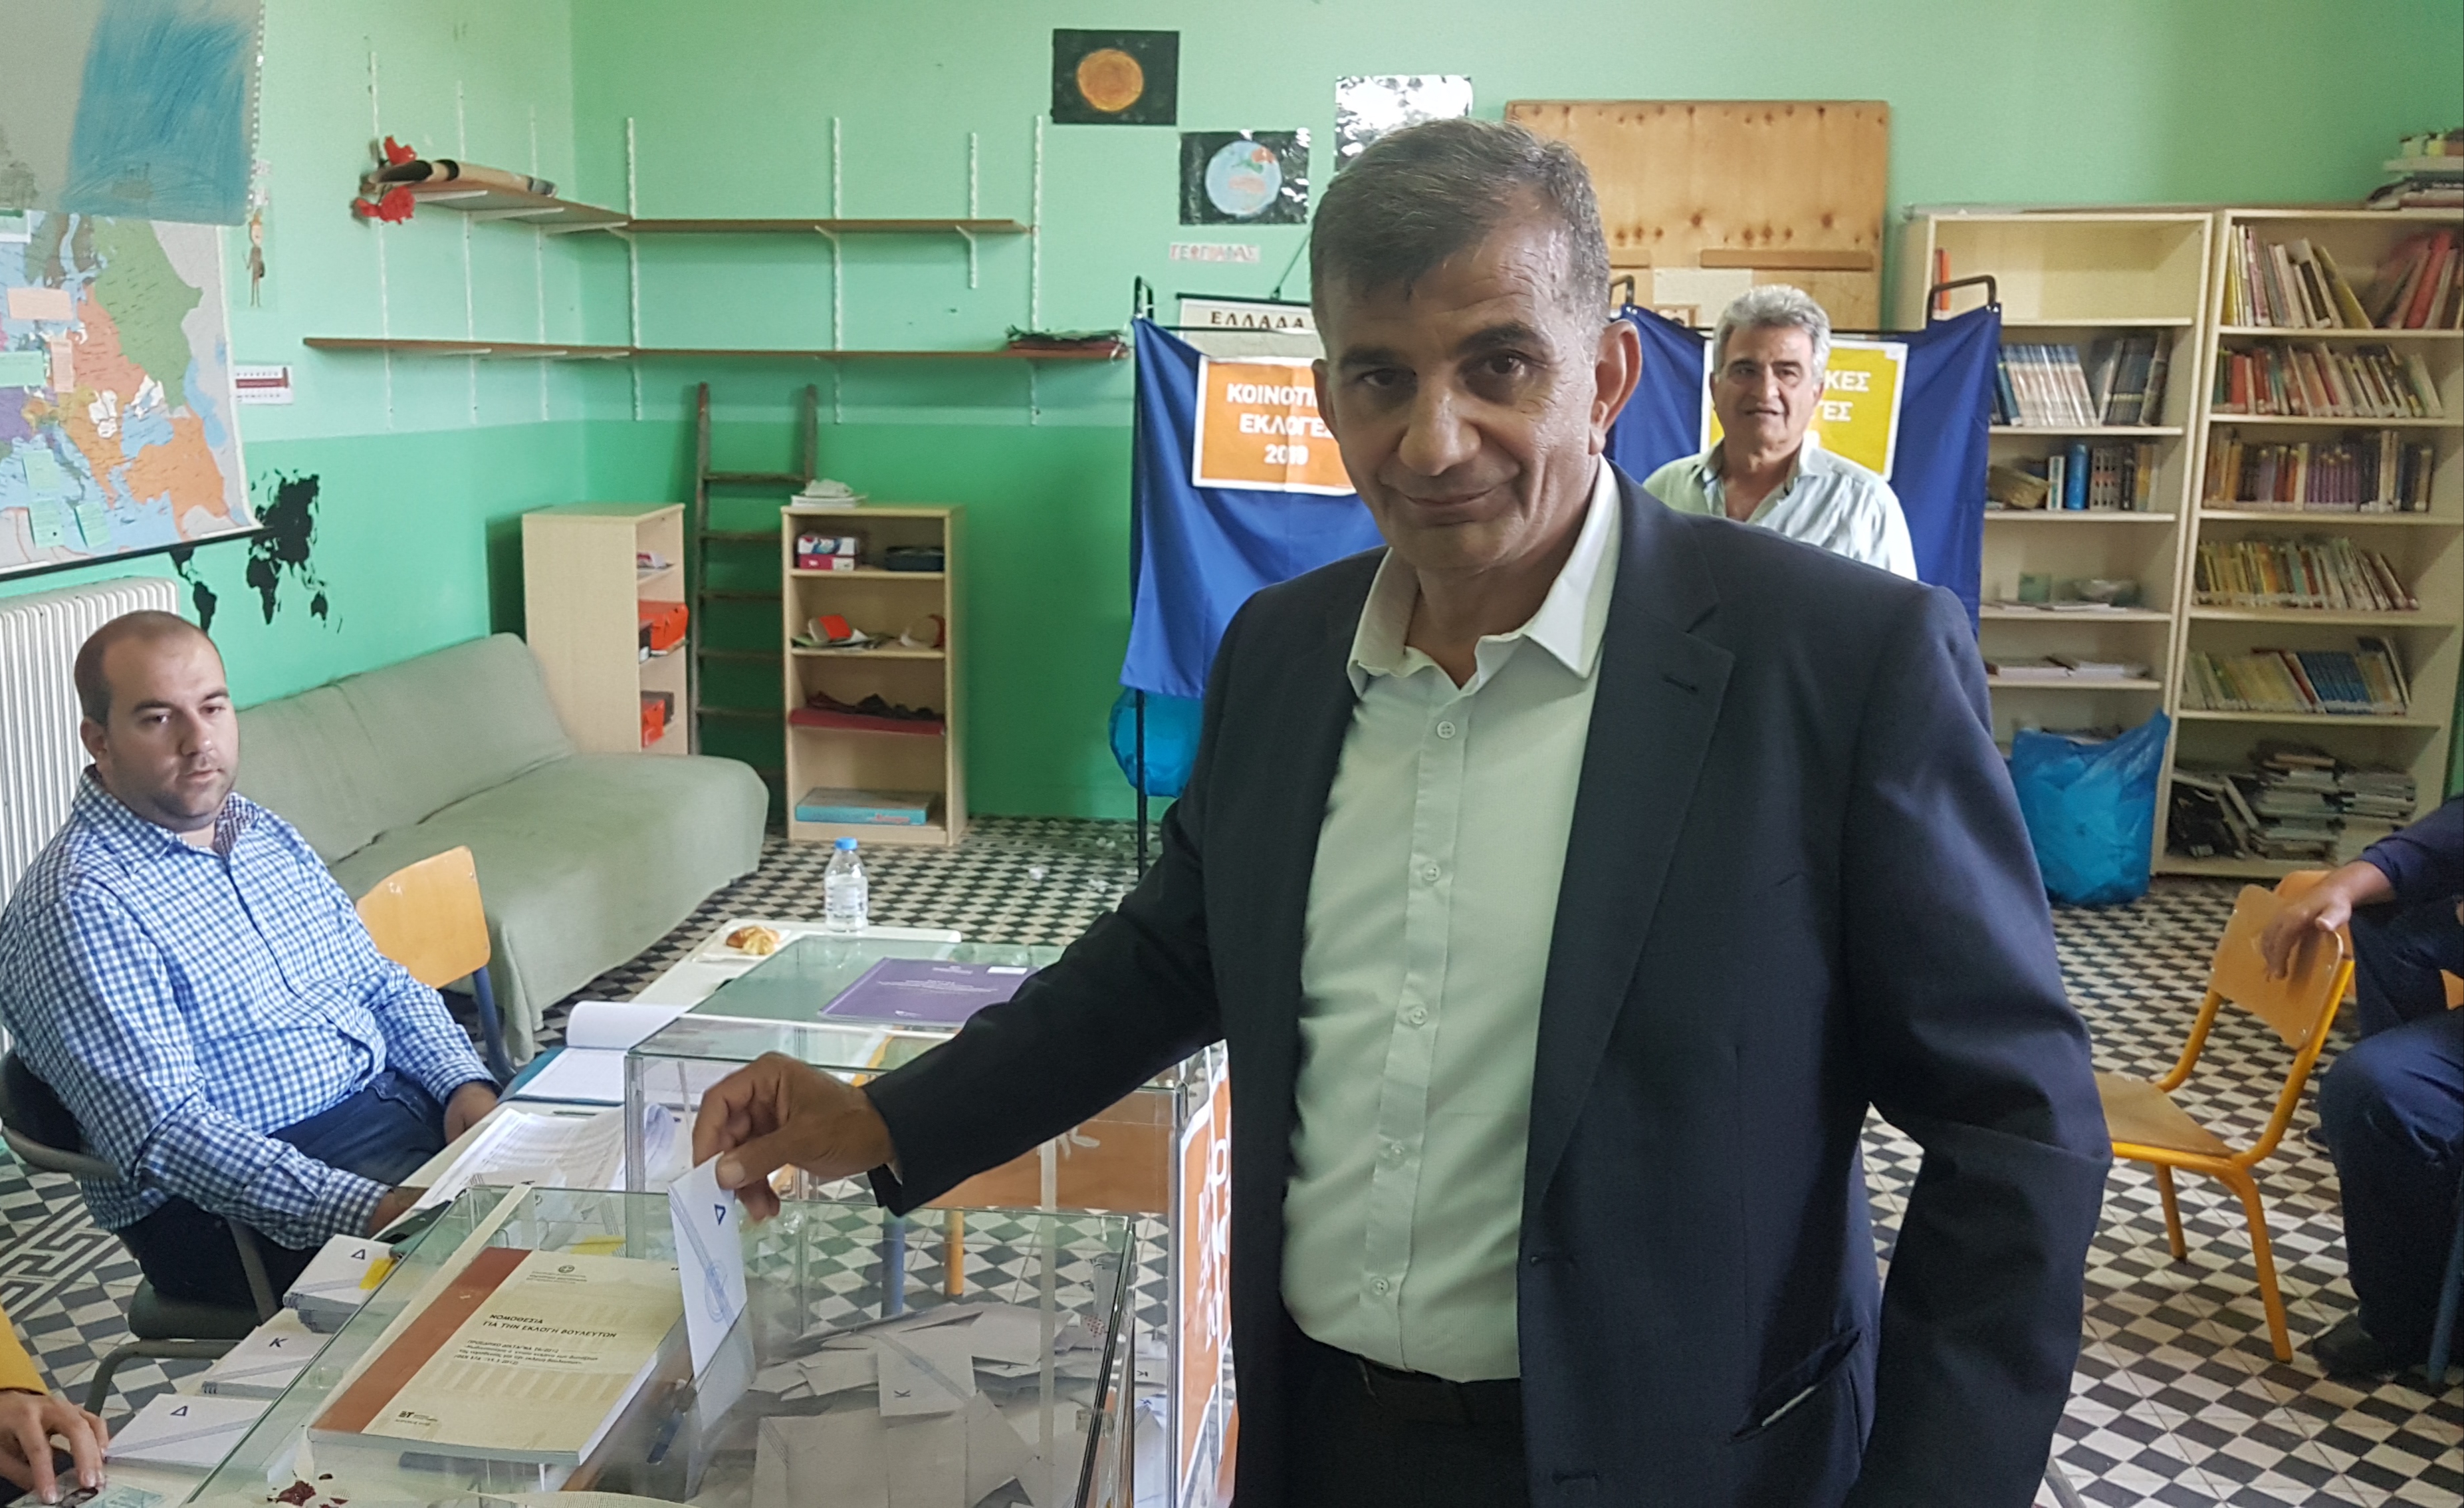 Ψήφισε ο Παντελής Μουρτζανός στον δήμο Αμαρίου